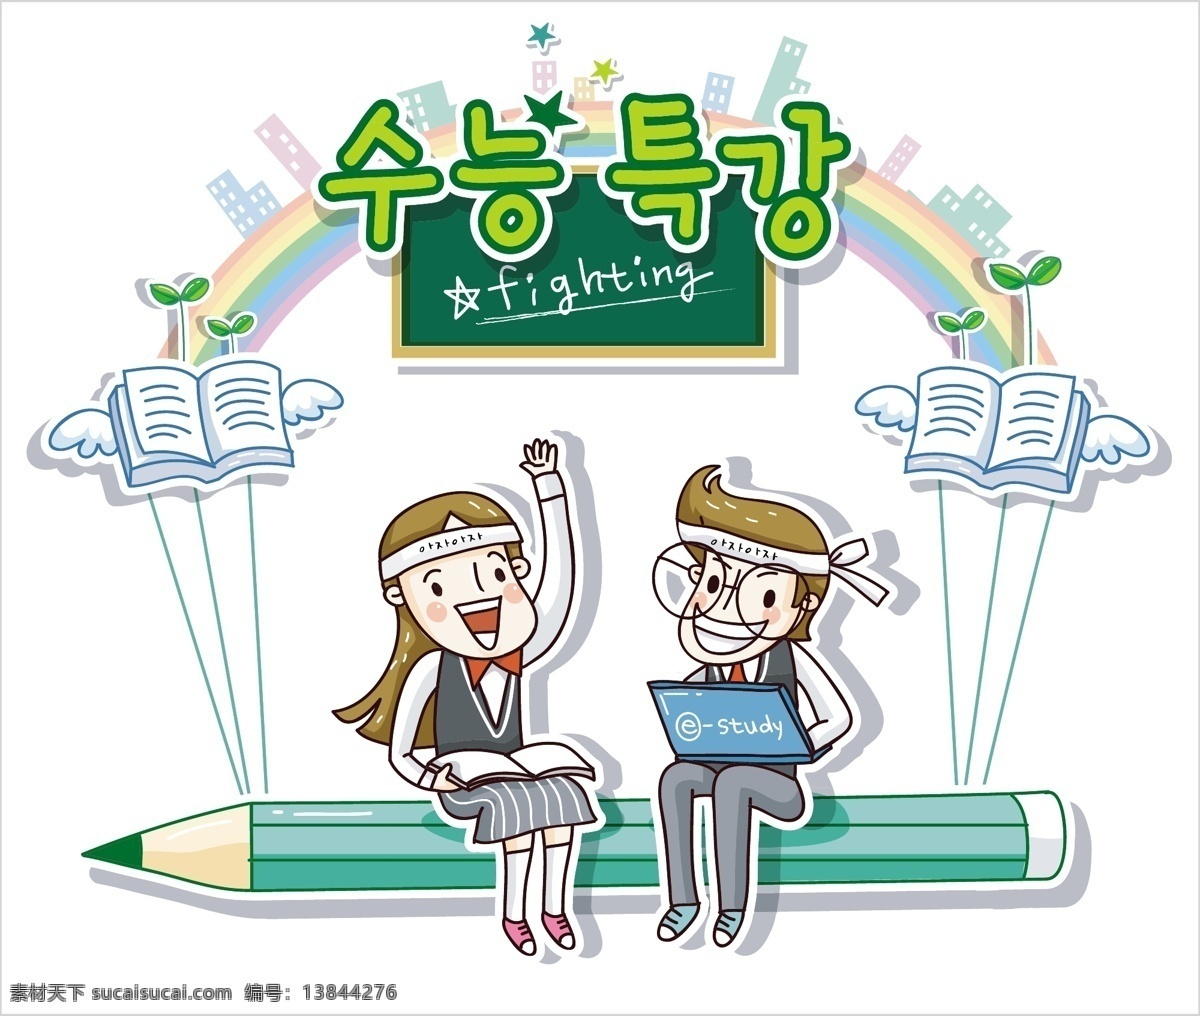 最新 韩国 矢量 卡通 标签cdr 卡通cdr 卡通素材 女孩卡通图 男孩卡通图 矢量图 其他矢量图